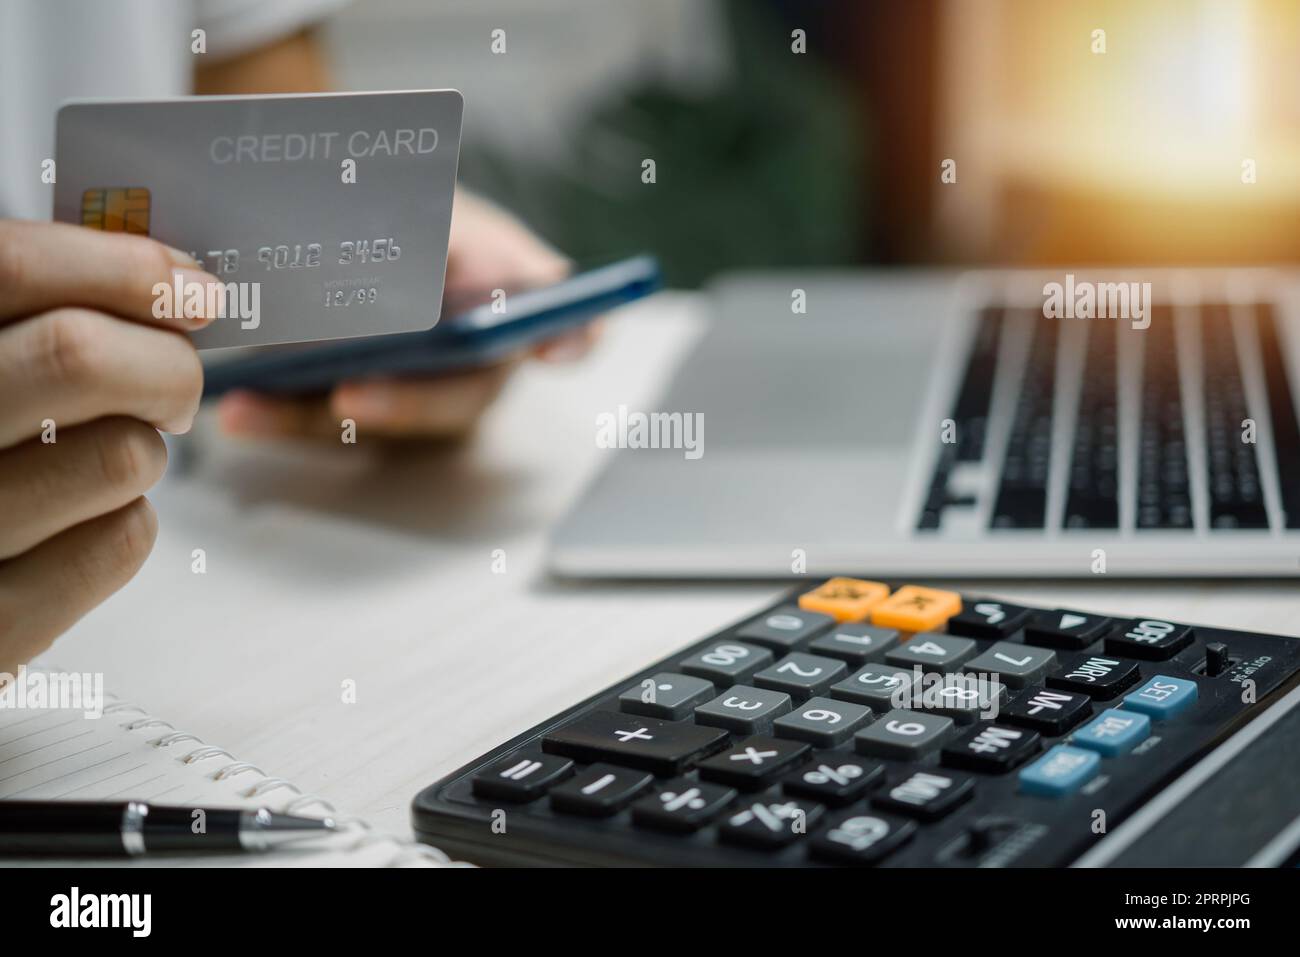 Business finance paiement technologie numérique commerce en ligne banque concept Homme tenant carte de crédit payer et acheter avec transfert d'argent. Banque D'Images